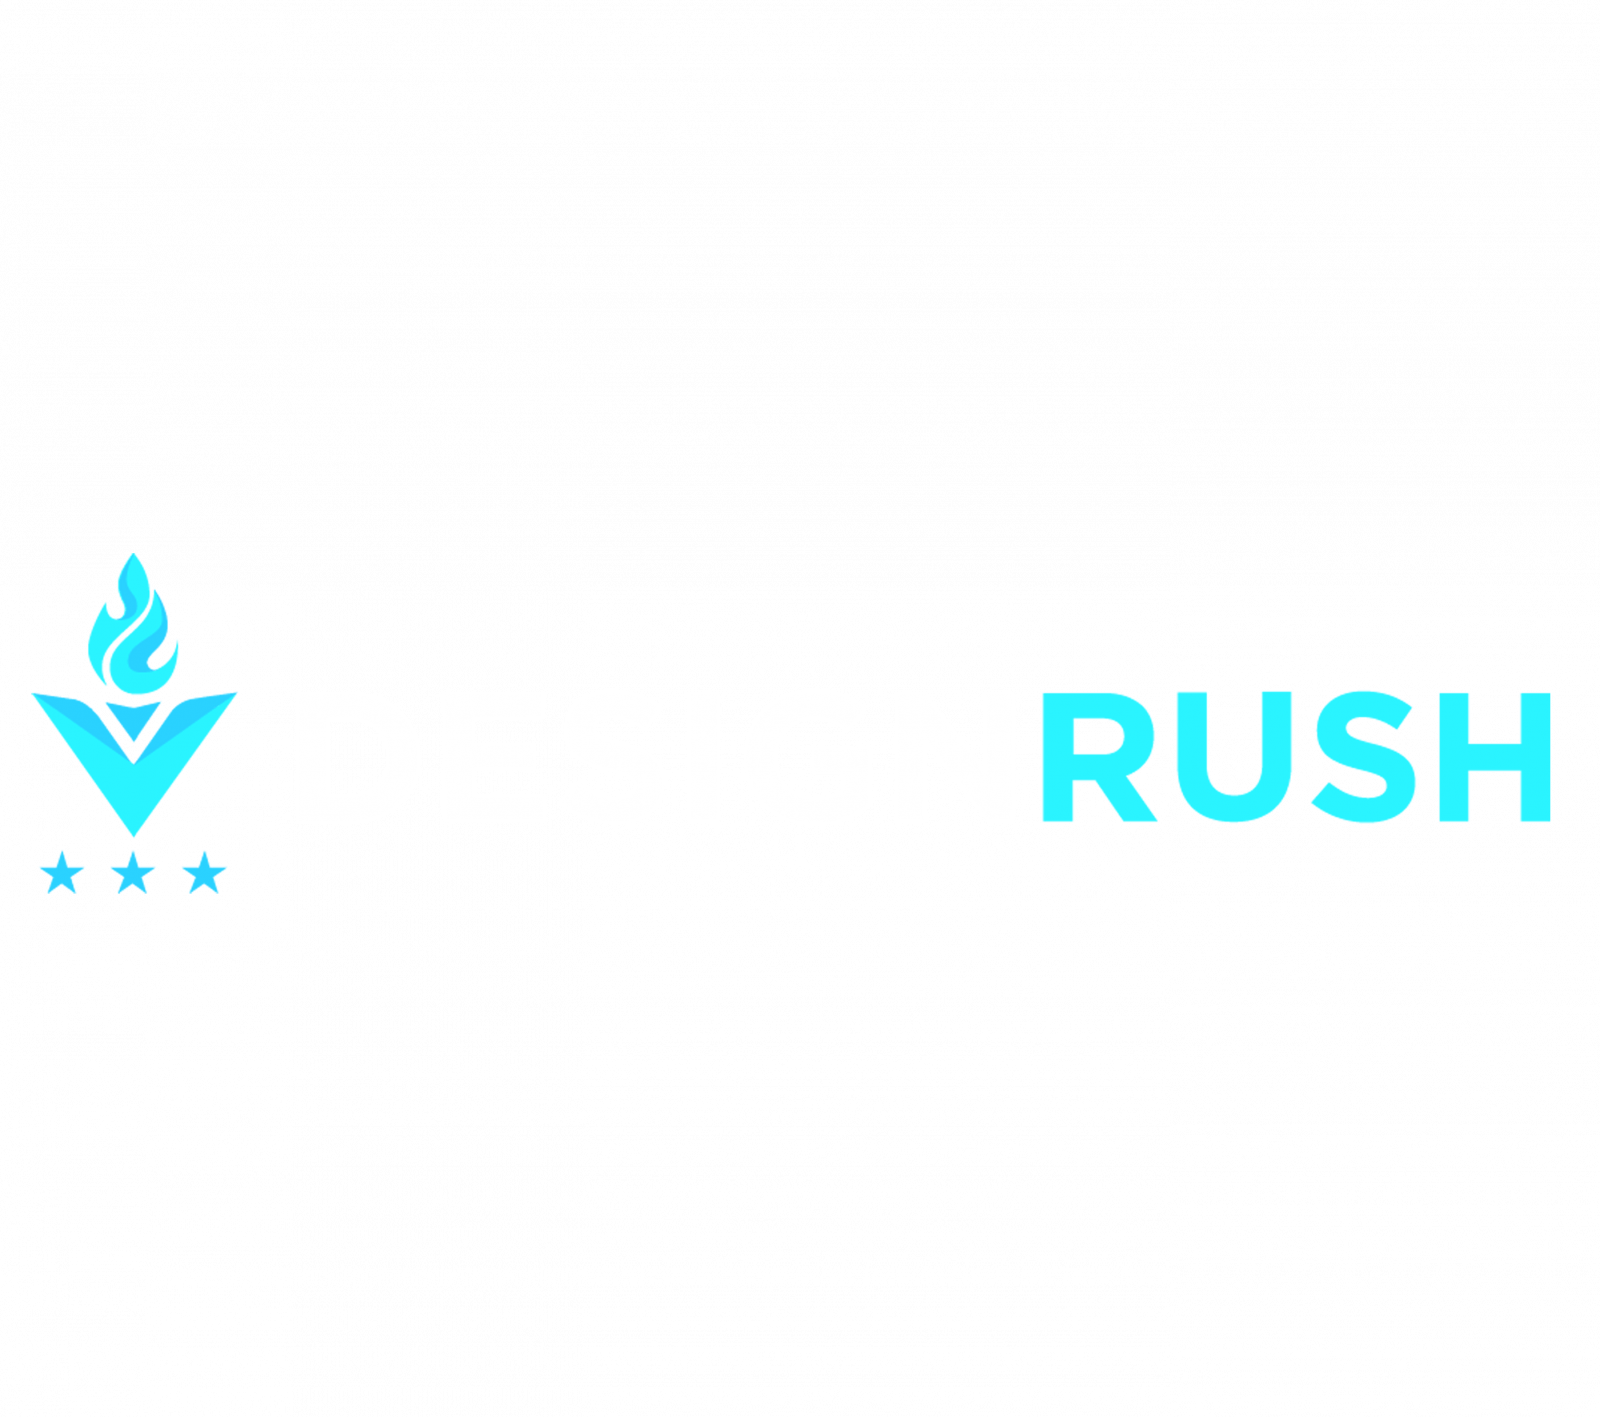 DesignRush Small Business Branding